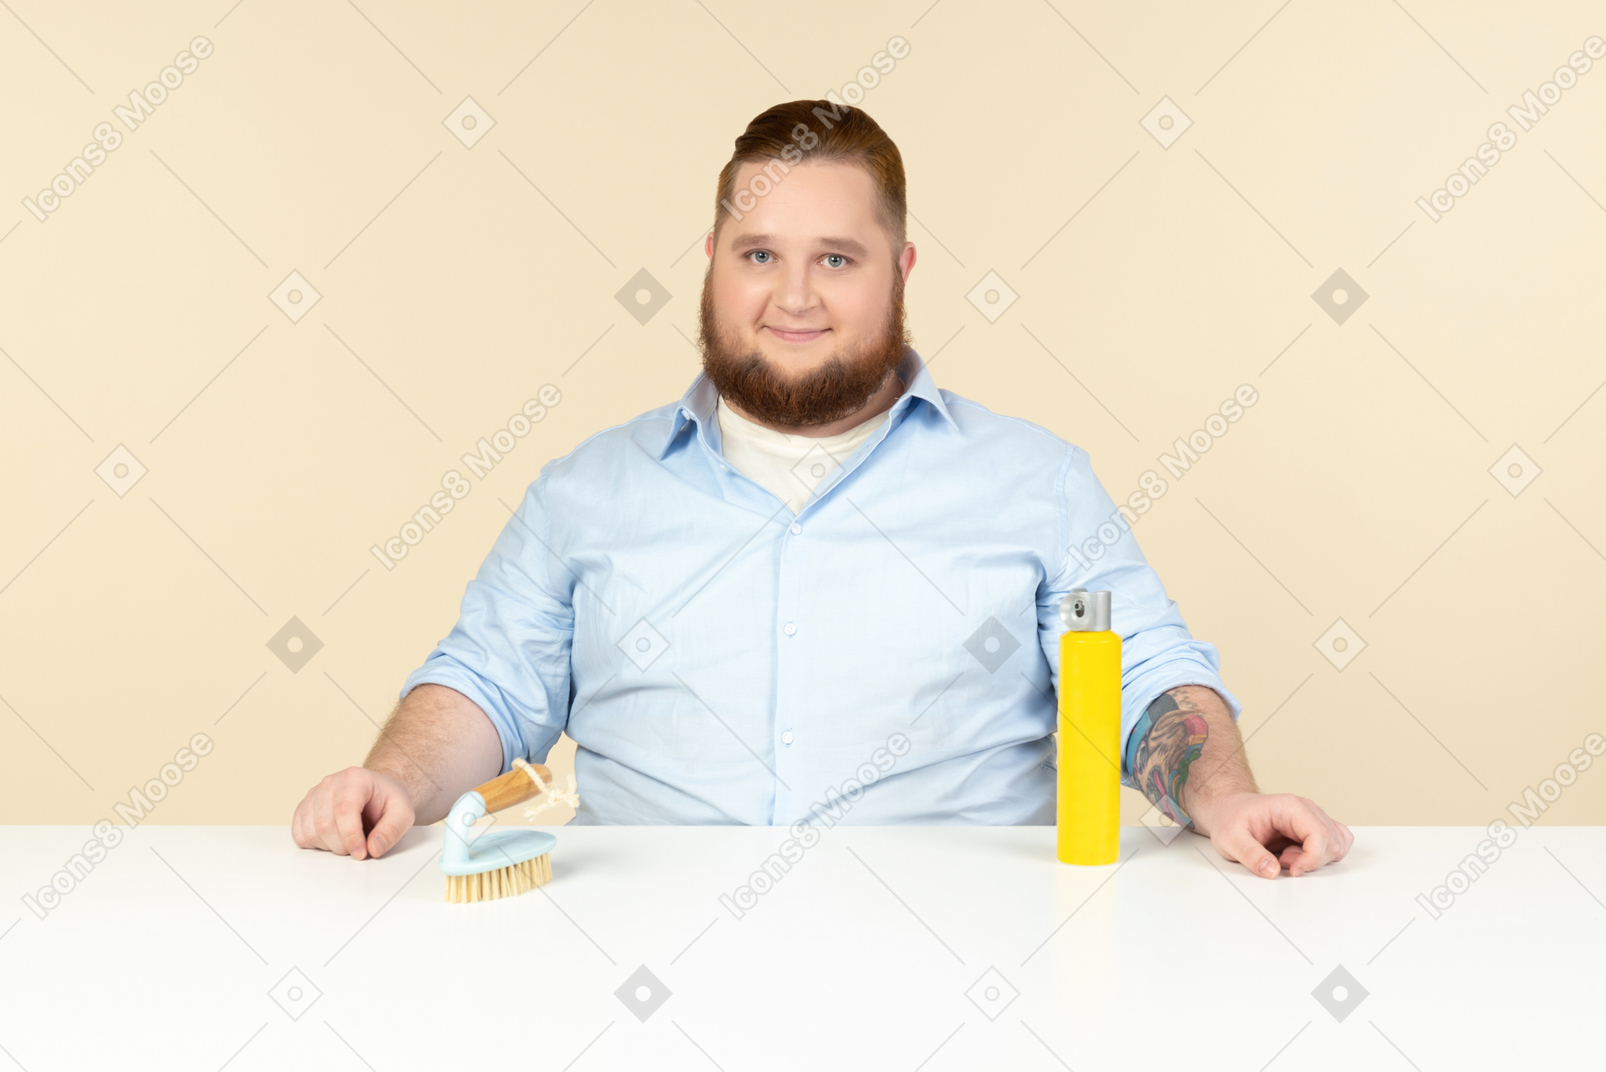 Contento buscando joven con sobrepeso househusband sentado en la mesa con spray de limpieza y un cepillo